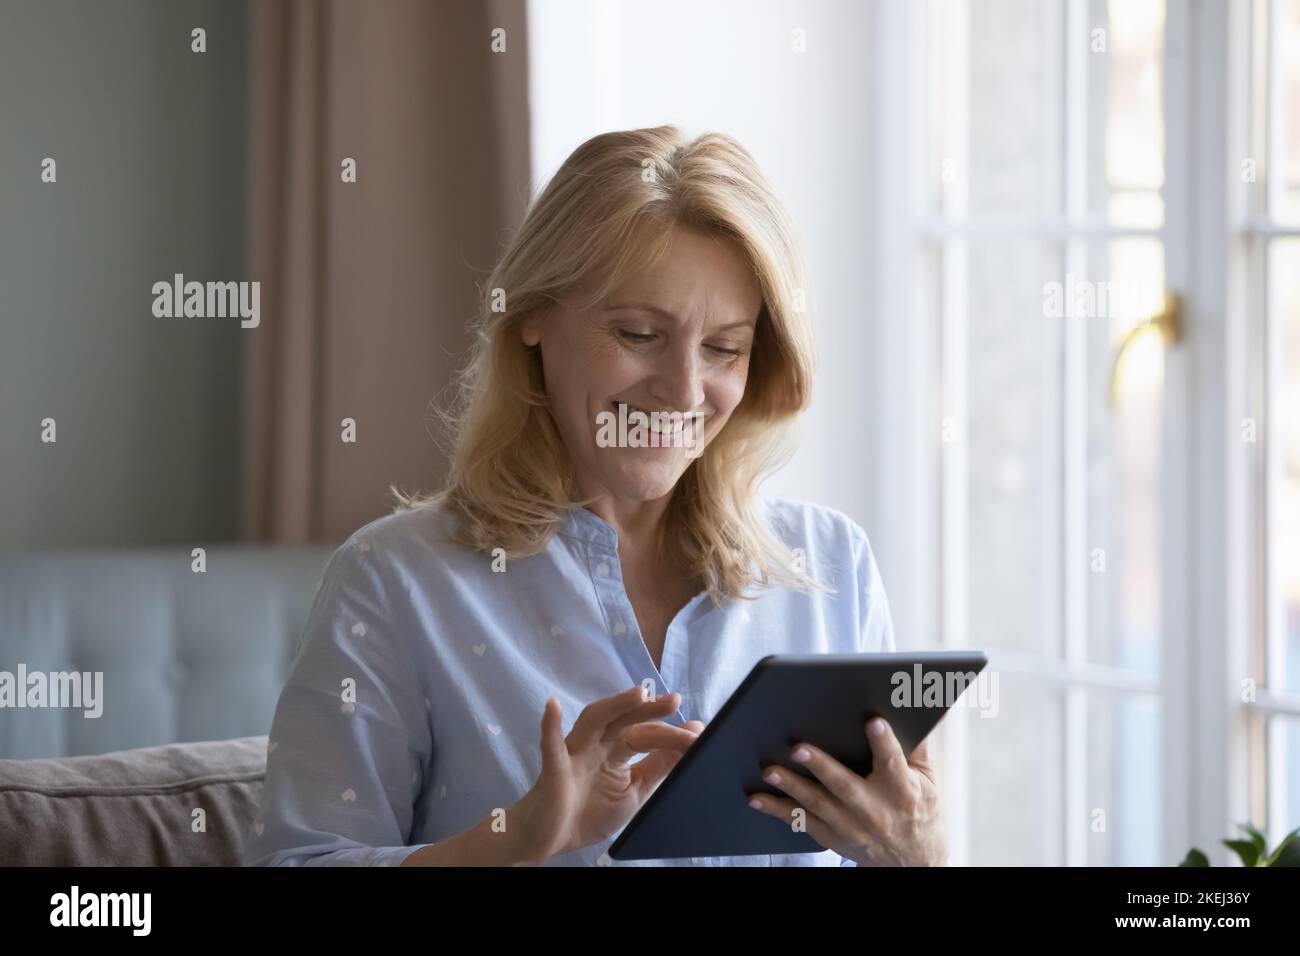 Atractiva mujer madura que compra bienes o servicios utiliza la tableta digital Foto de stock